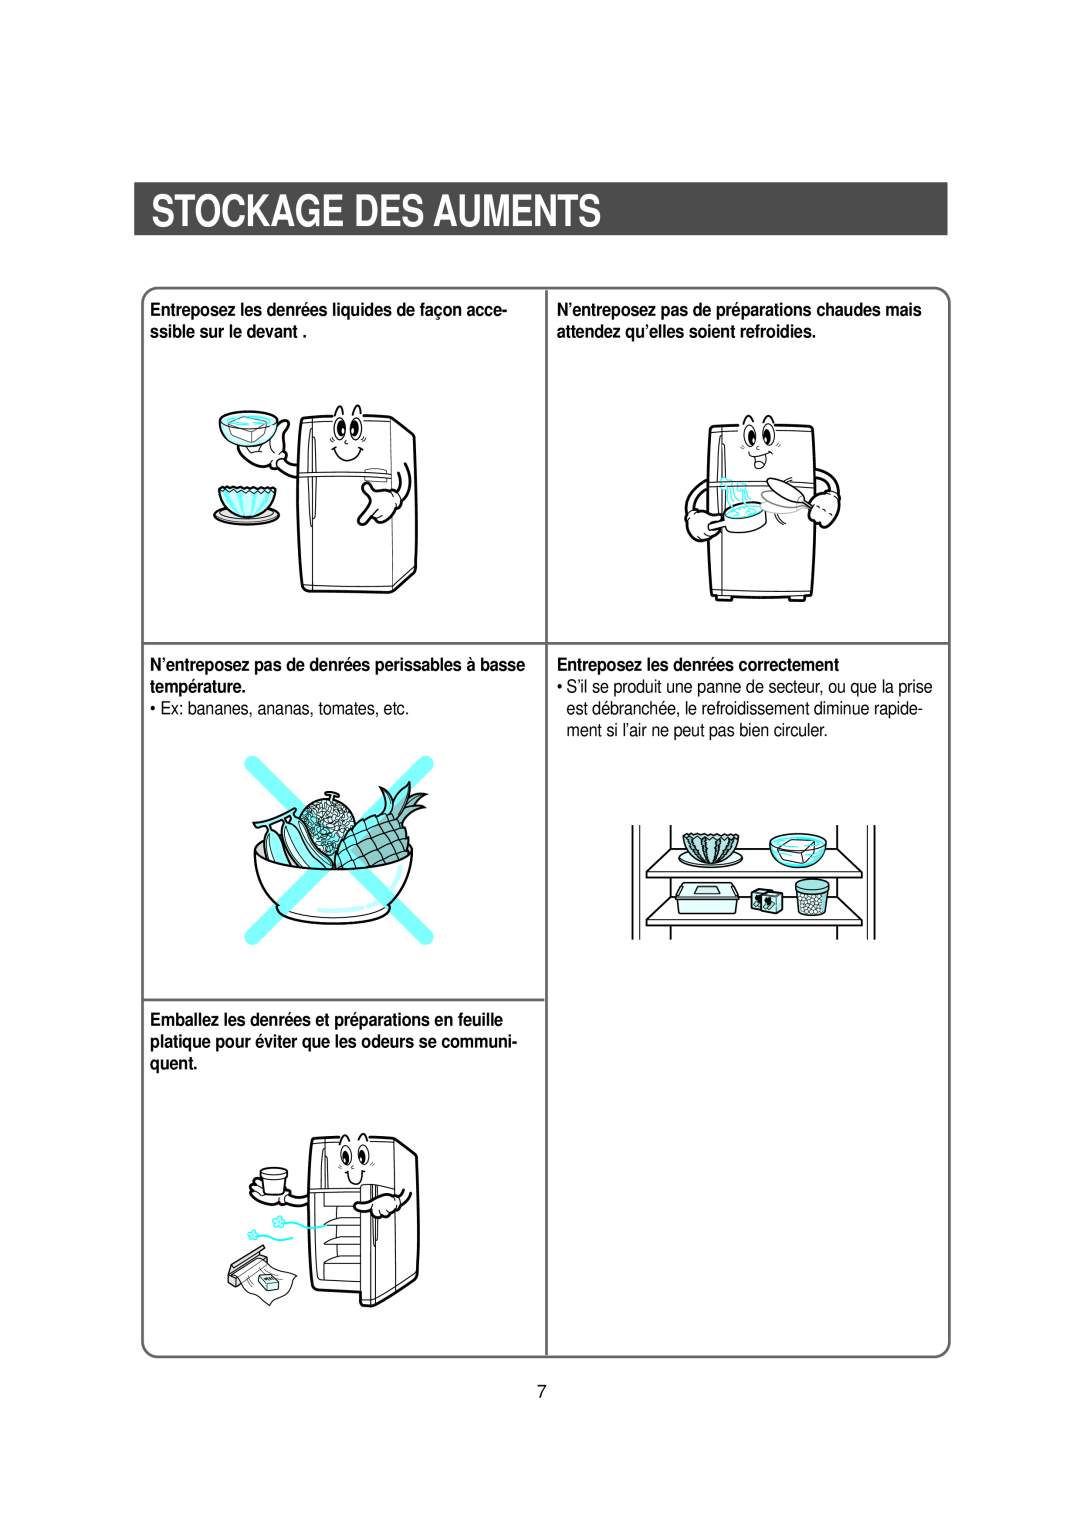 Samsung DA99-00477C manual Stockage Des Auments, Entreposez les denrées liquides de façon acce- ssible sur le devant 